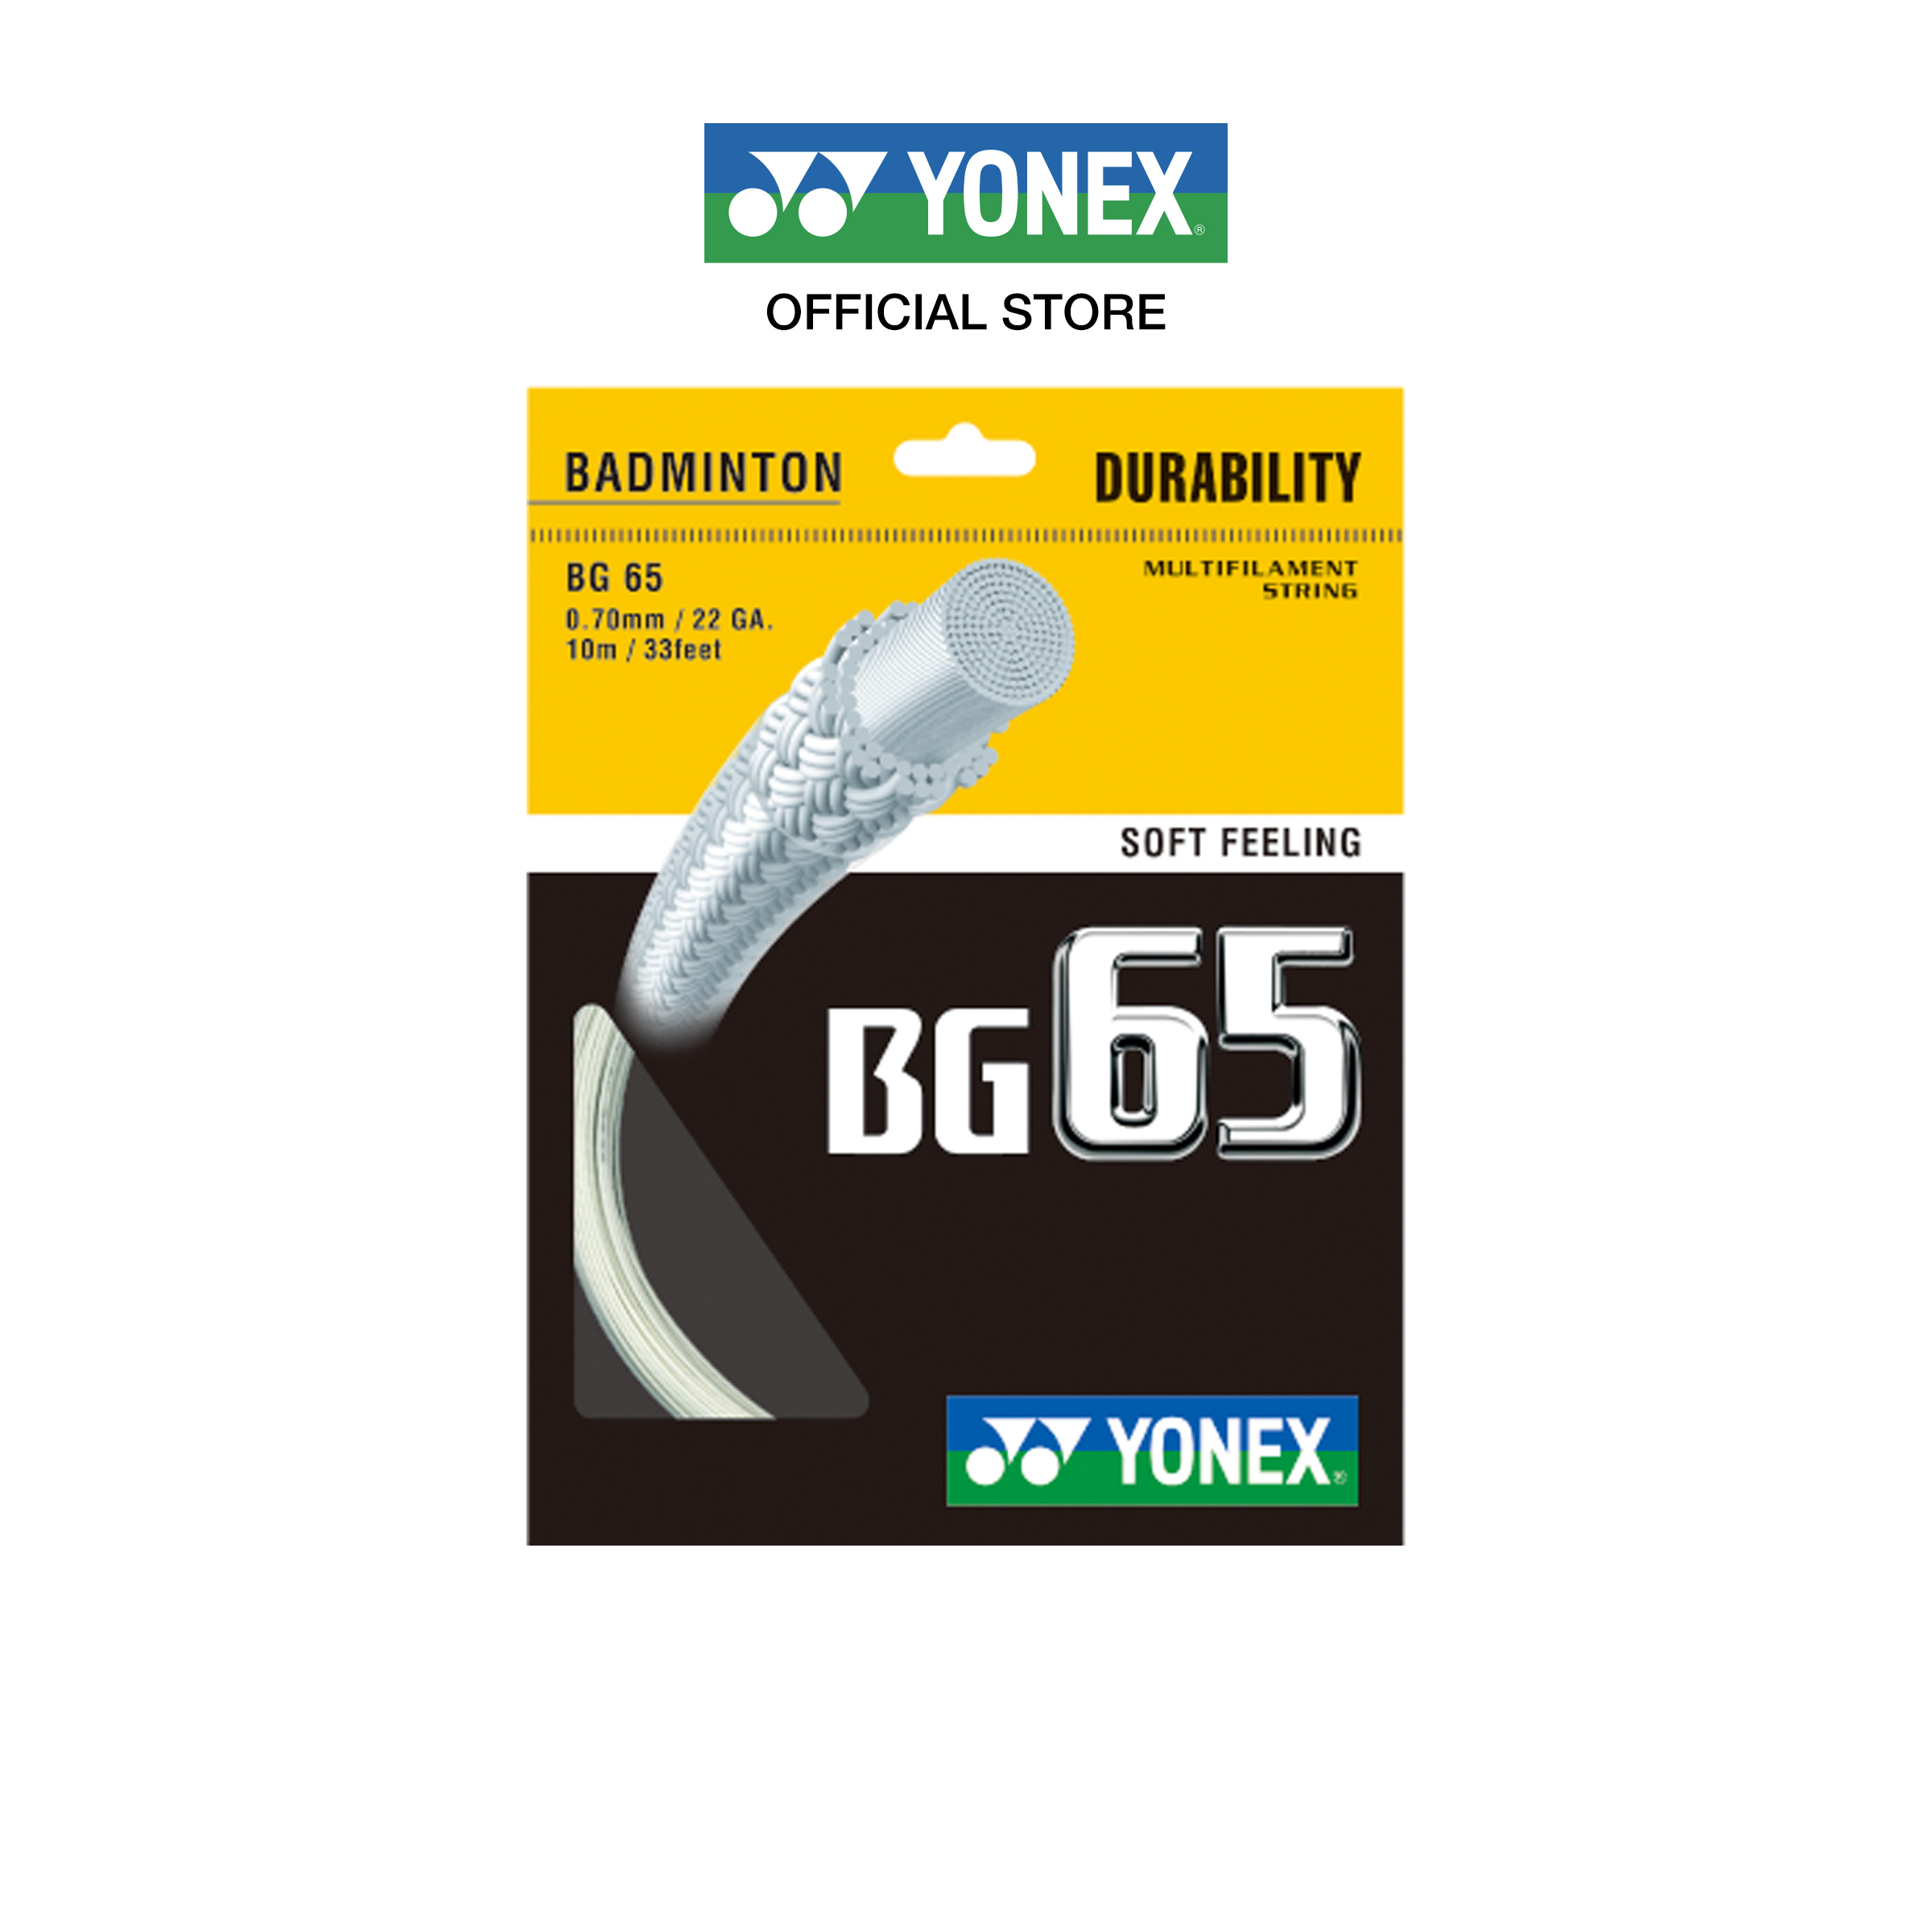 YONEX รุ่น BG65 เอ็นแบดมินตัน เส้นขนาด 0.70 มม. ผลิตที่ประเทศญี่ป่น เส้นใยถักความทนทานสูง ลดการเสียดสี ให้ความรู้สึกที่อ่อนนุ่มในการตี